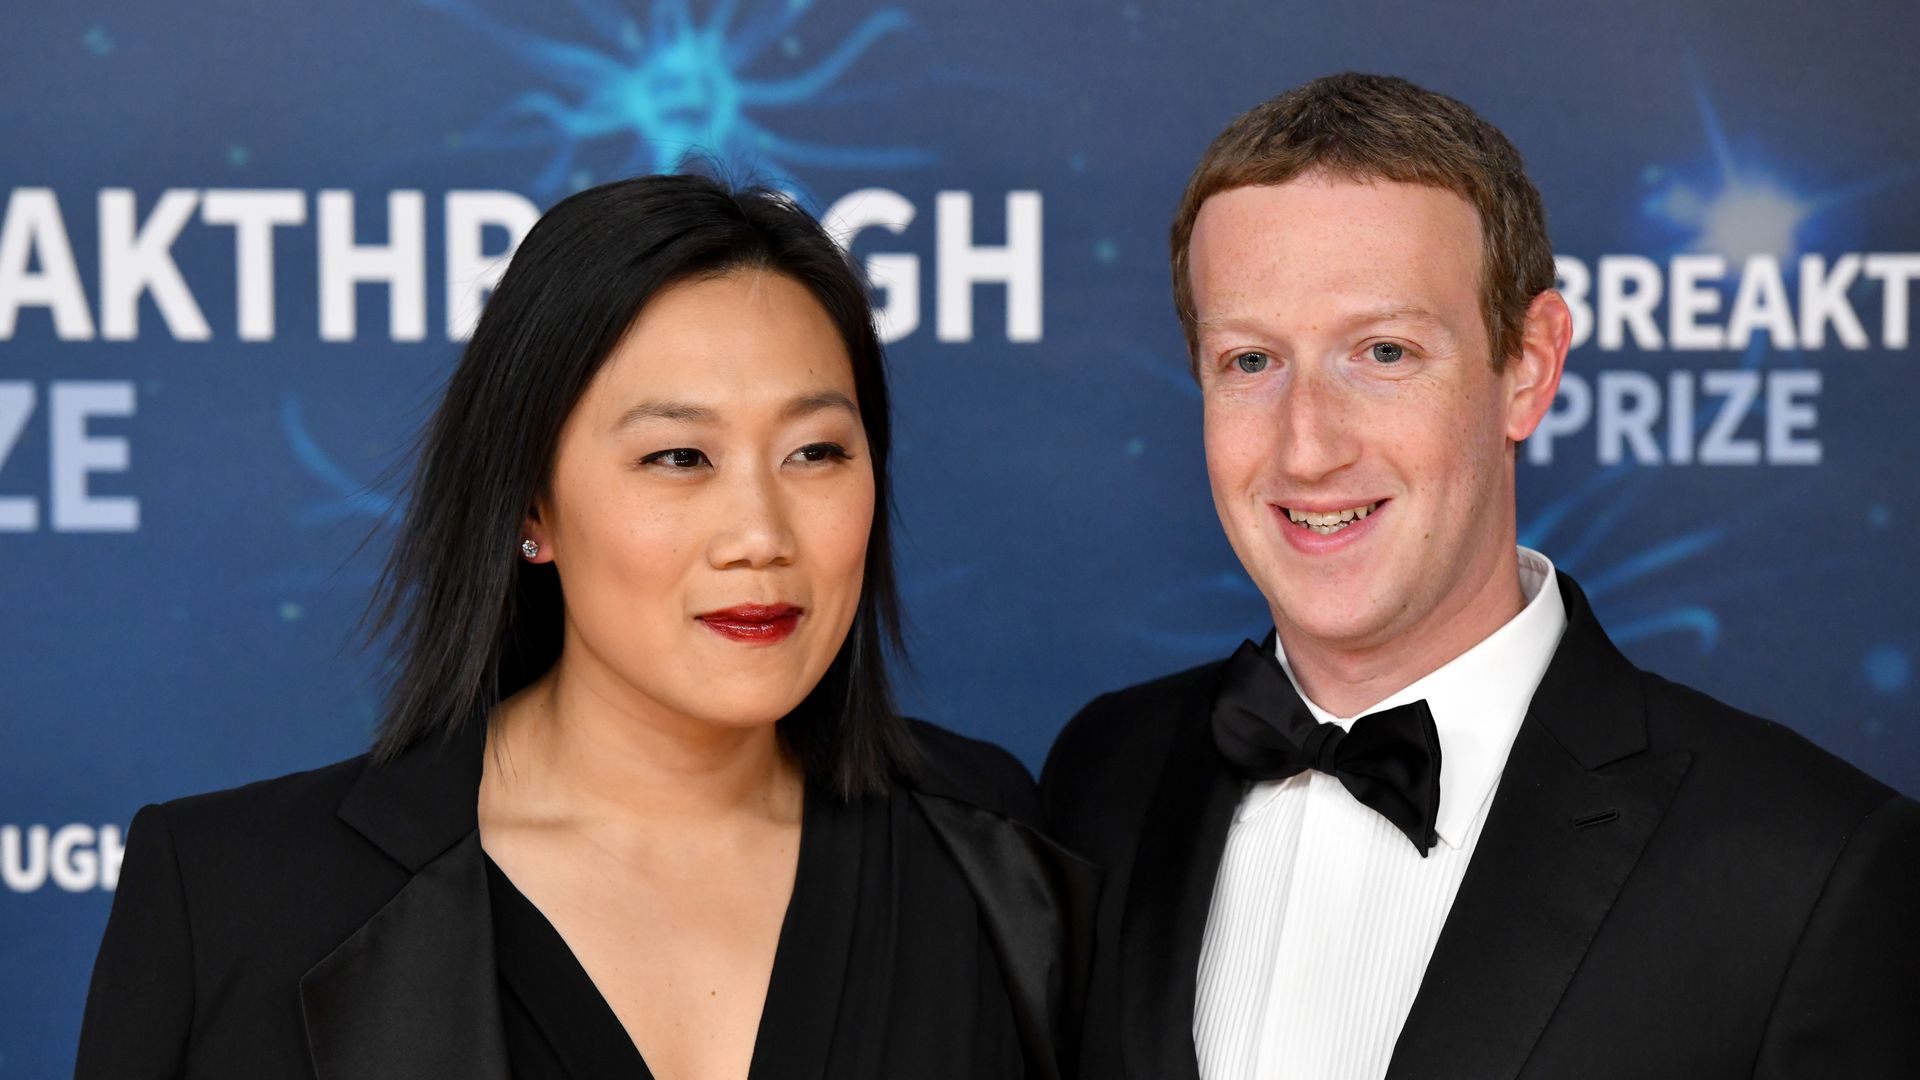 All about Mark Zuckerberg's 270M Hawai'i compound, wife Priscilla and